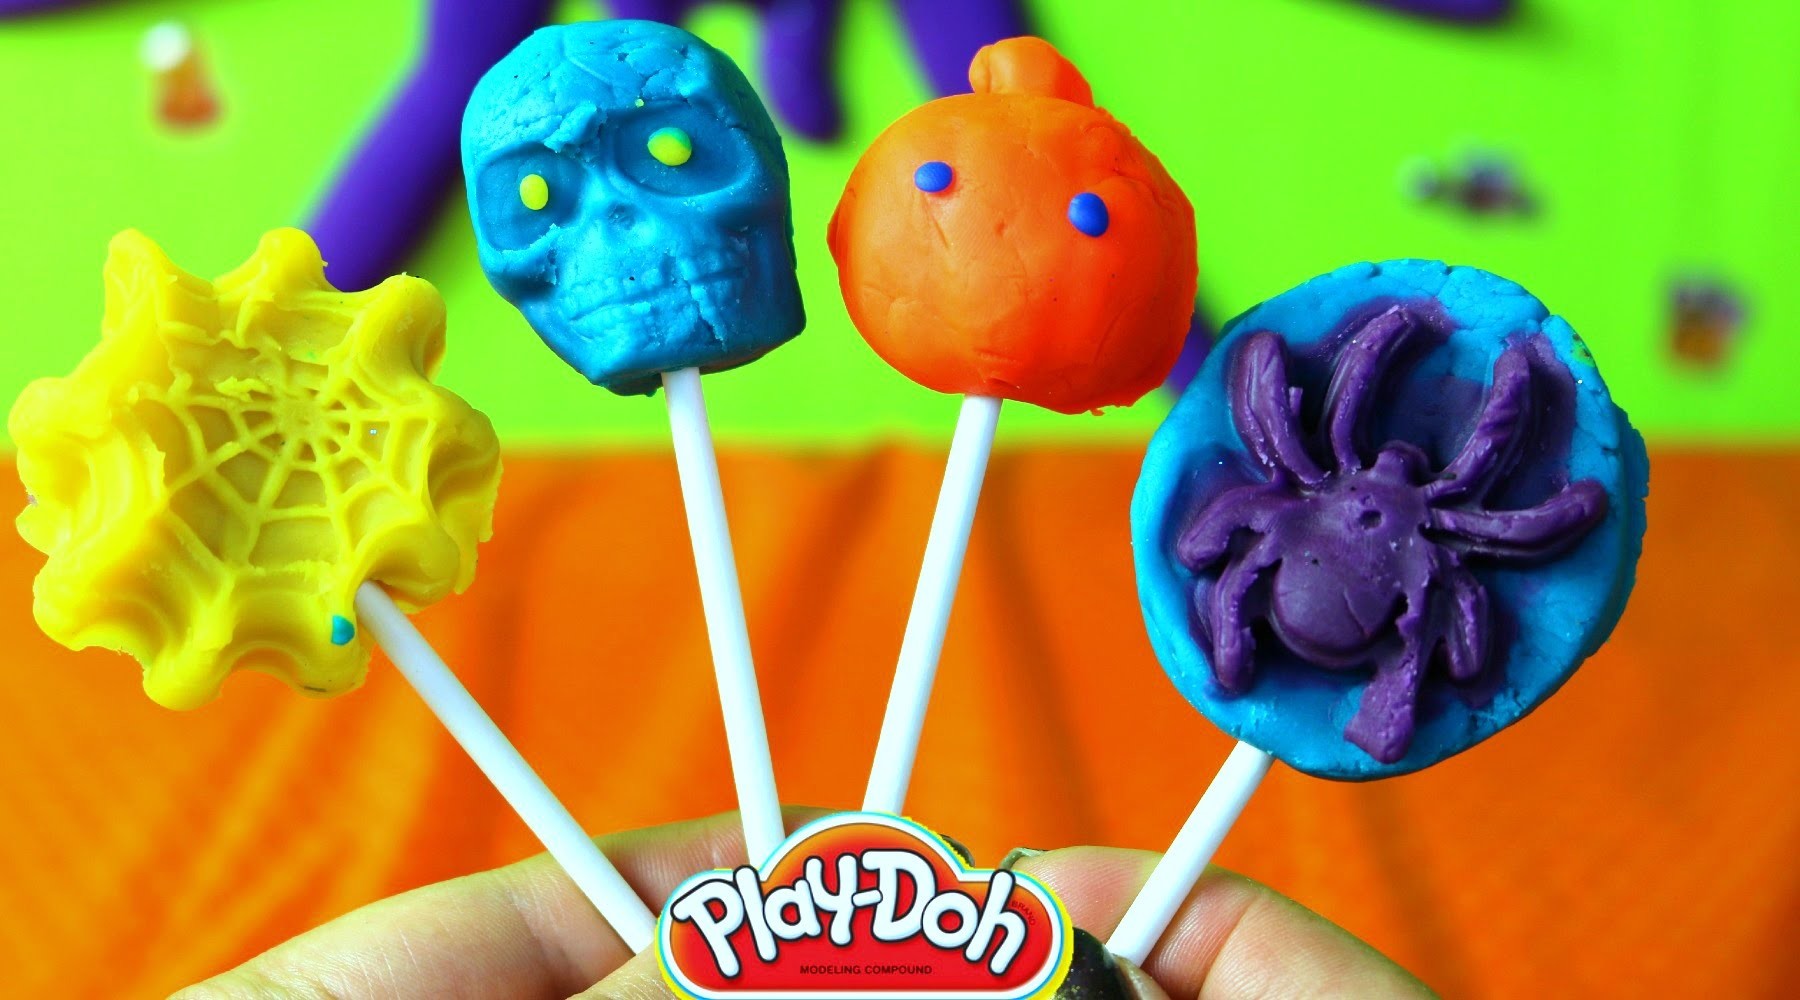 Paletas de Plastilina Halloween| Spooky Halloween Play Doh Popsicles